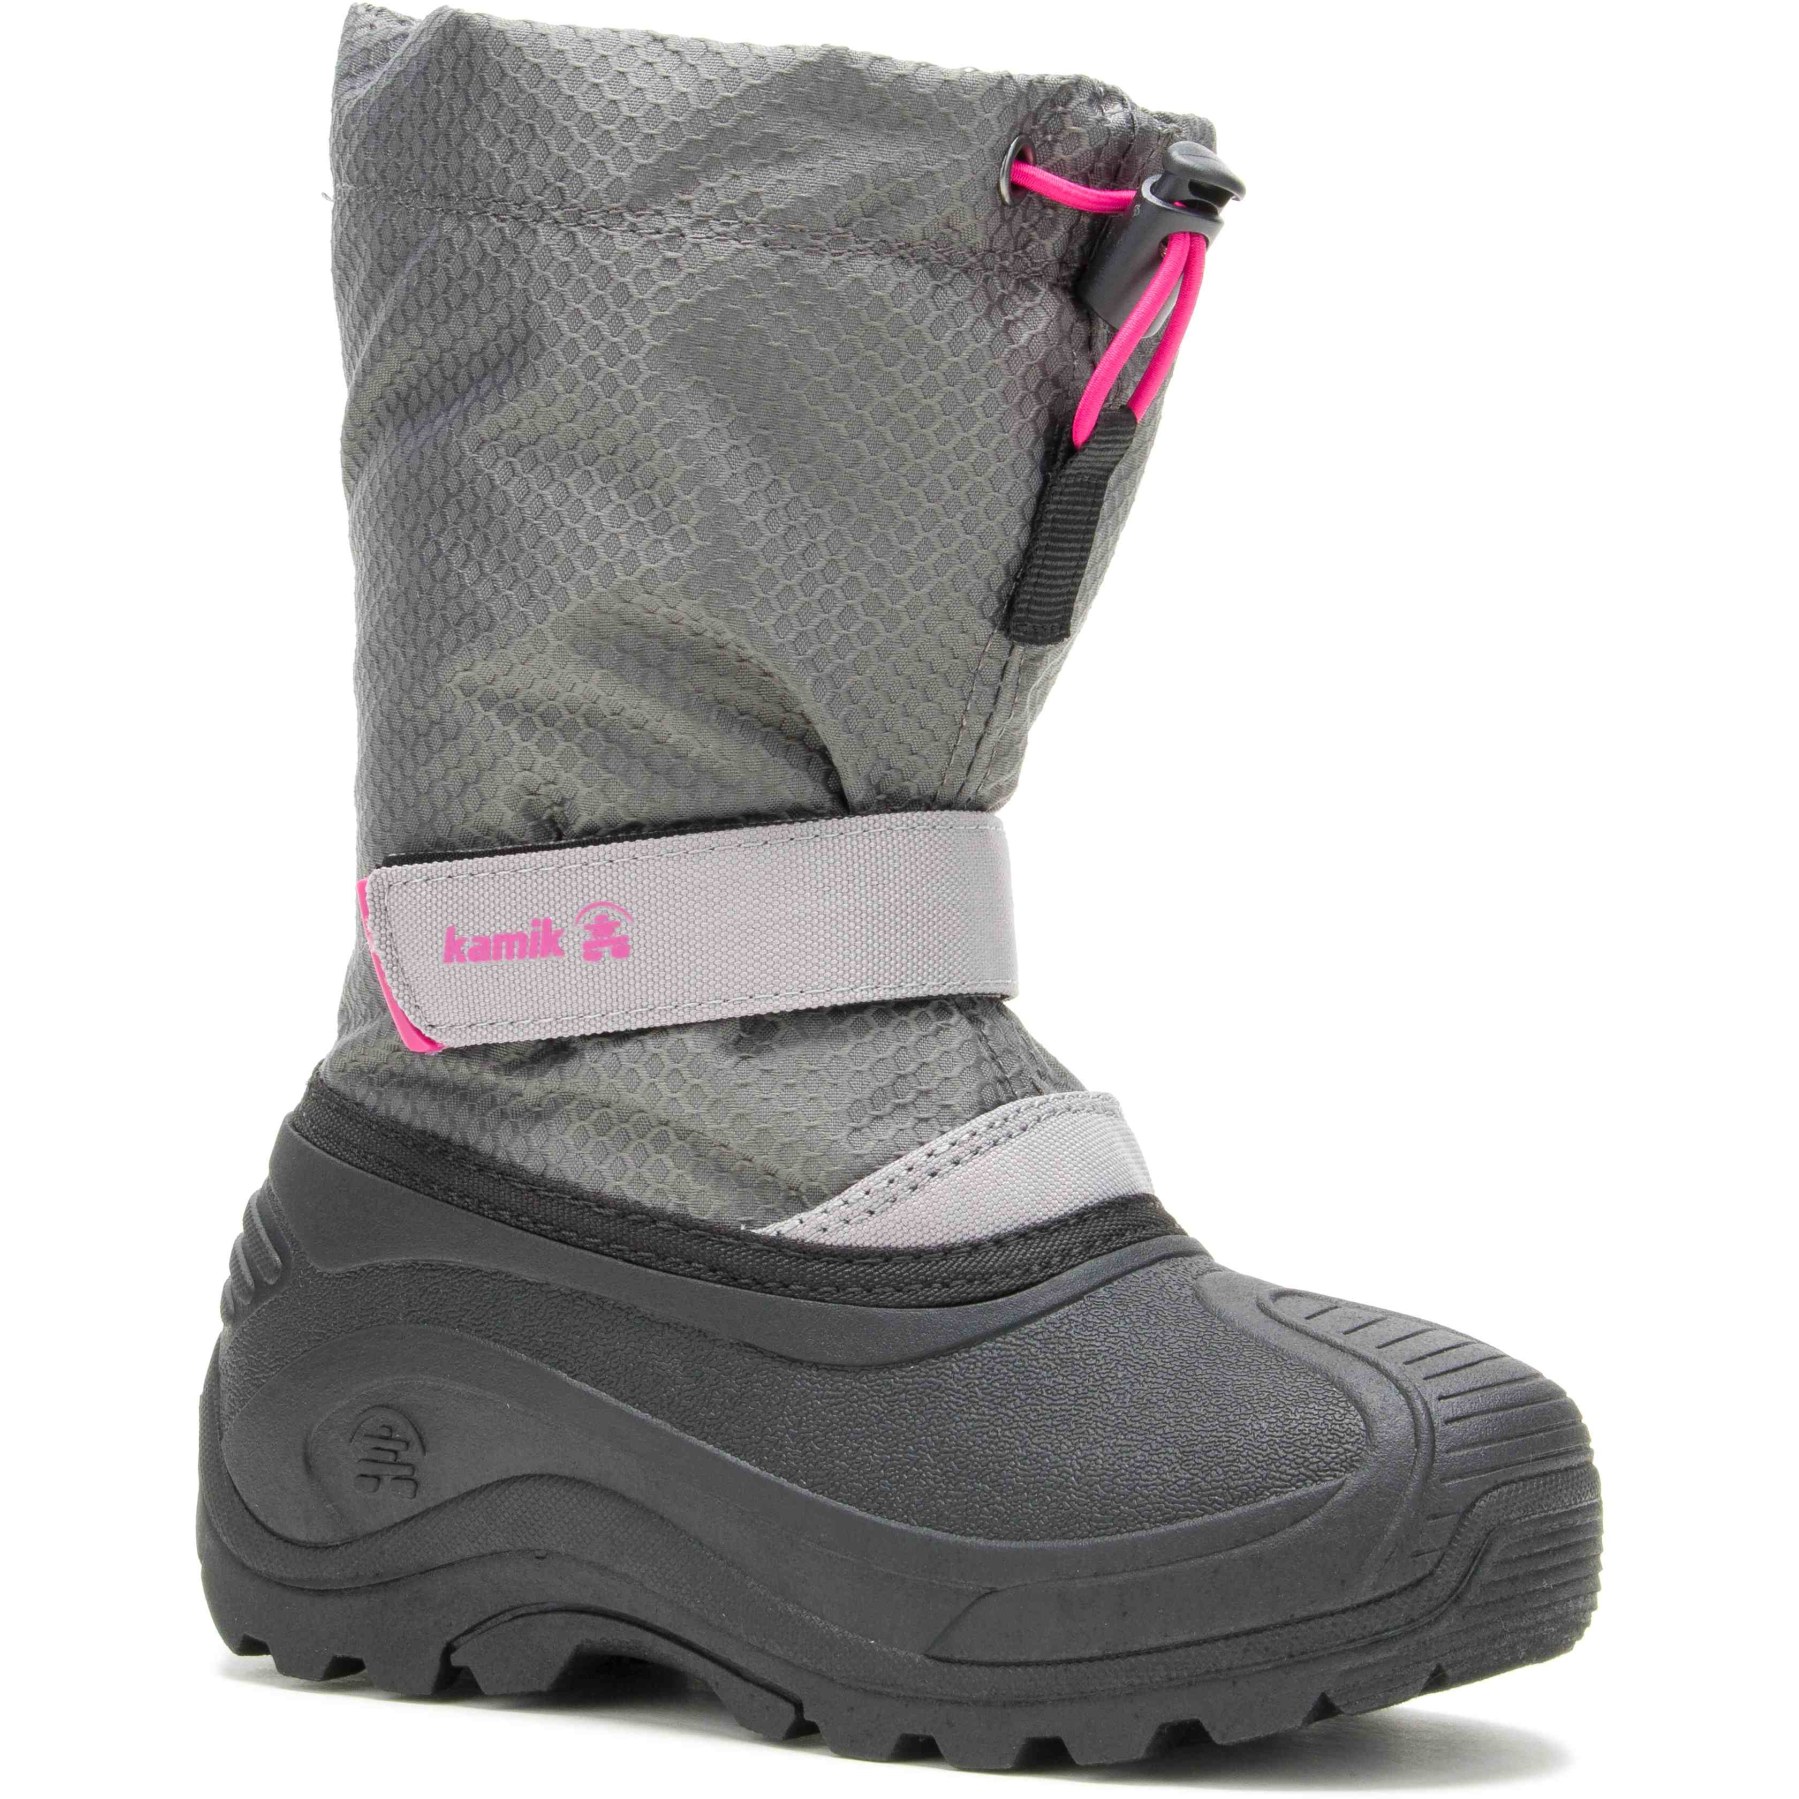 Productfoto van Kamik Finley 2 Kids Winter Boots - Grey/Pink (Size 32-39)